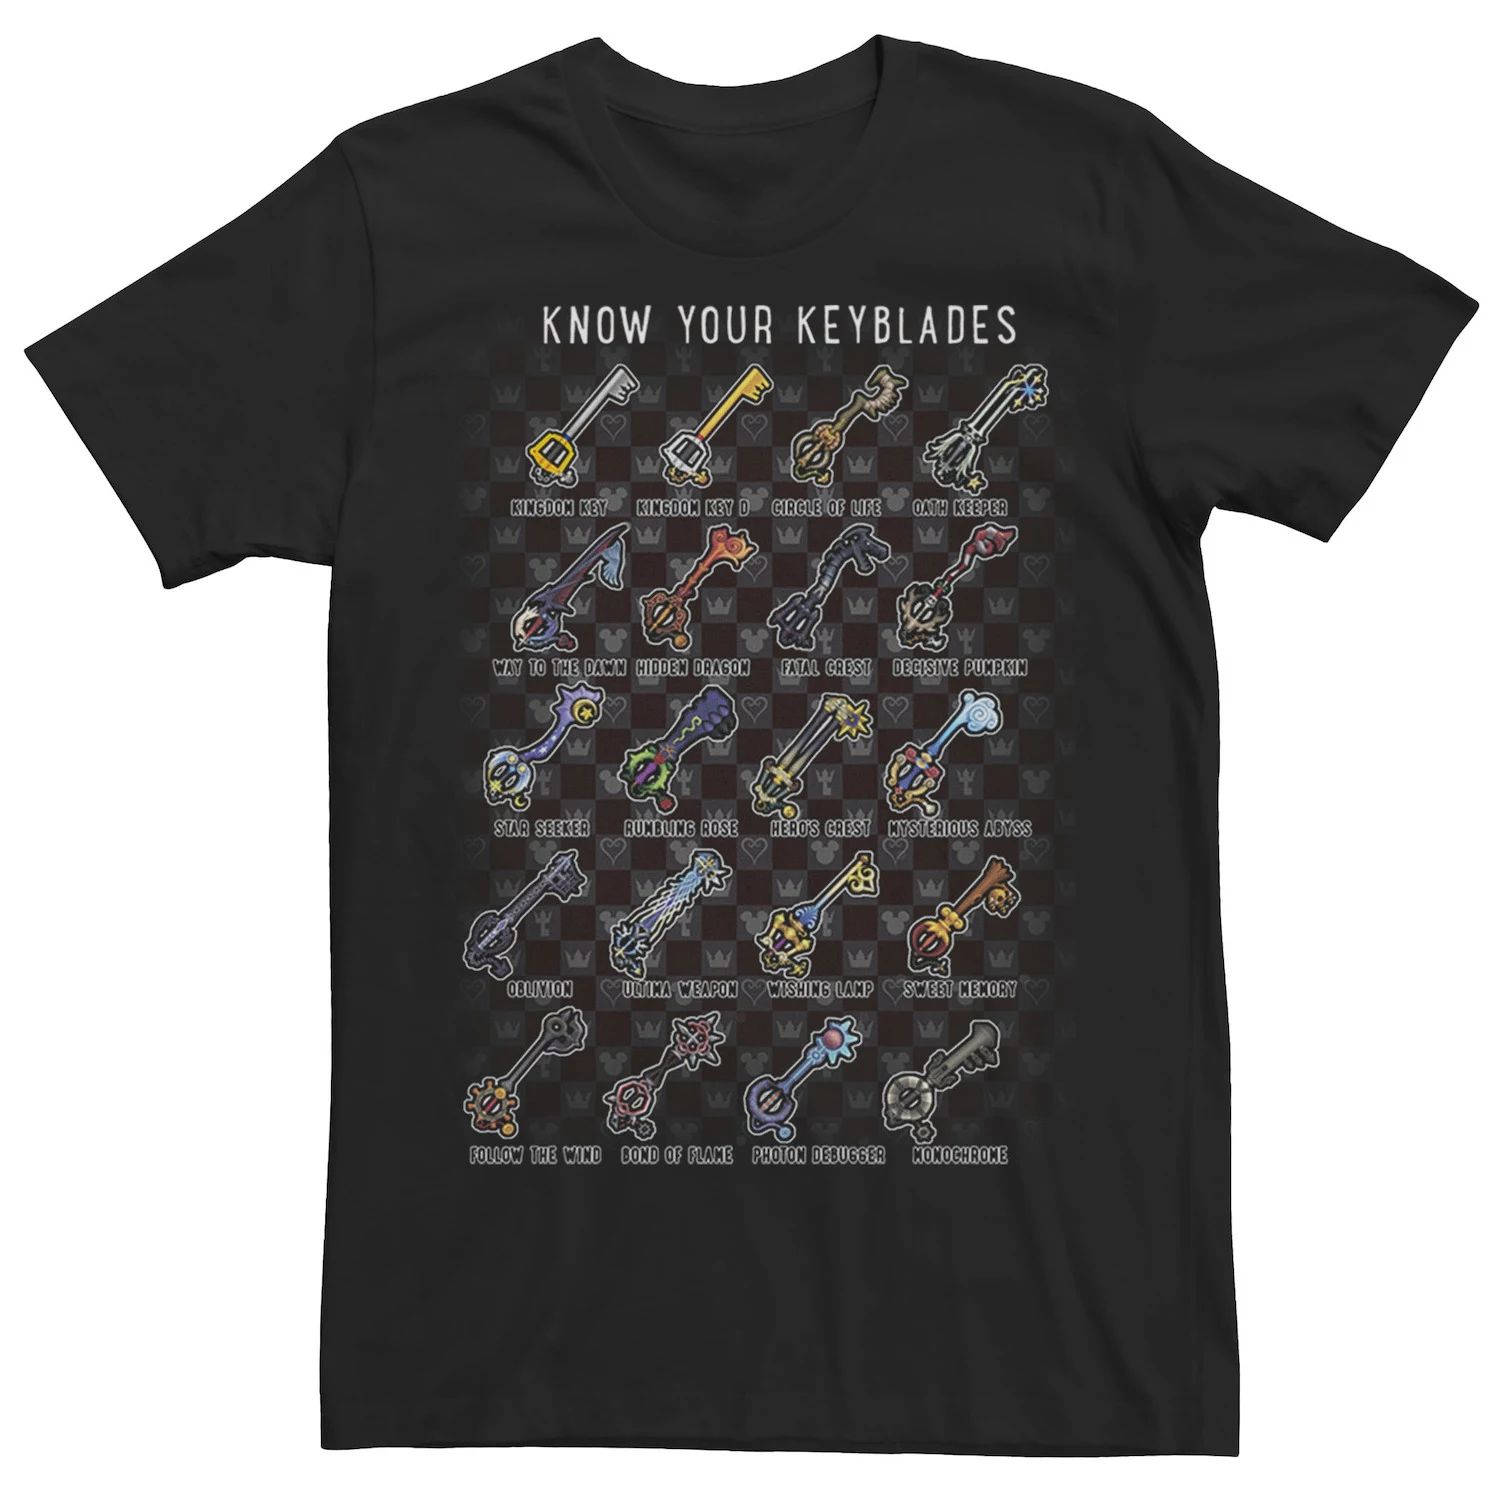 Мужская футболка с плакатом Kingdom Hearts Keyblades Chart Licensed Character цена и фото